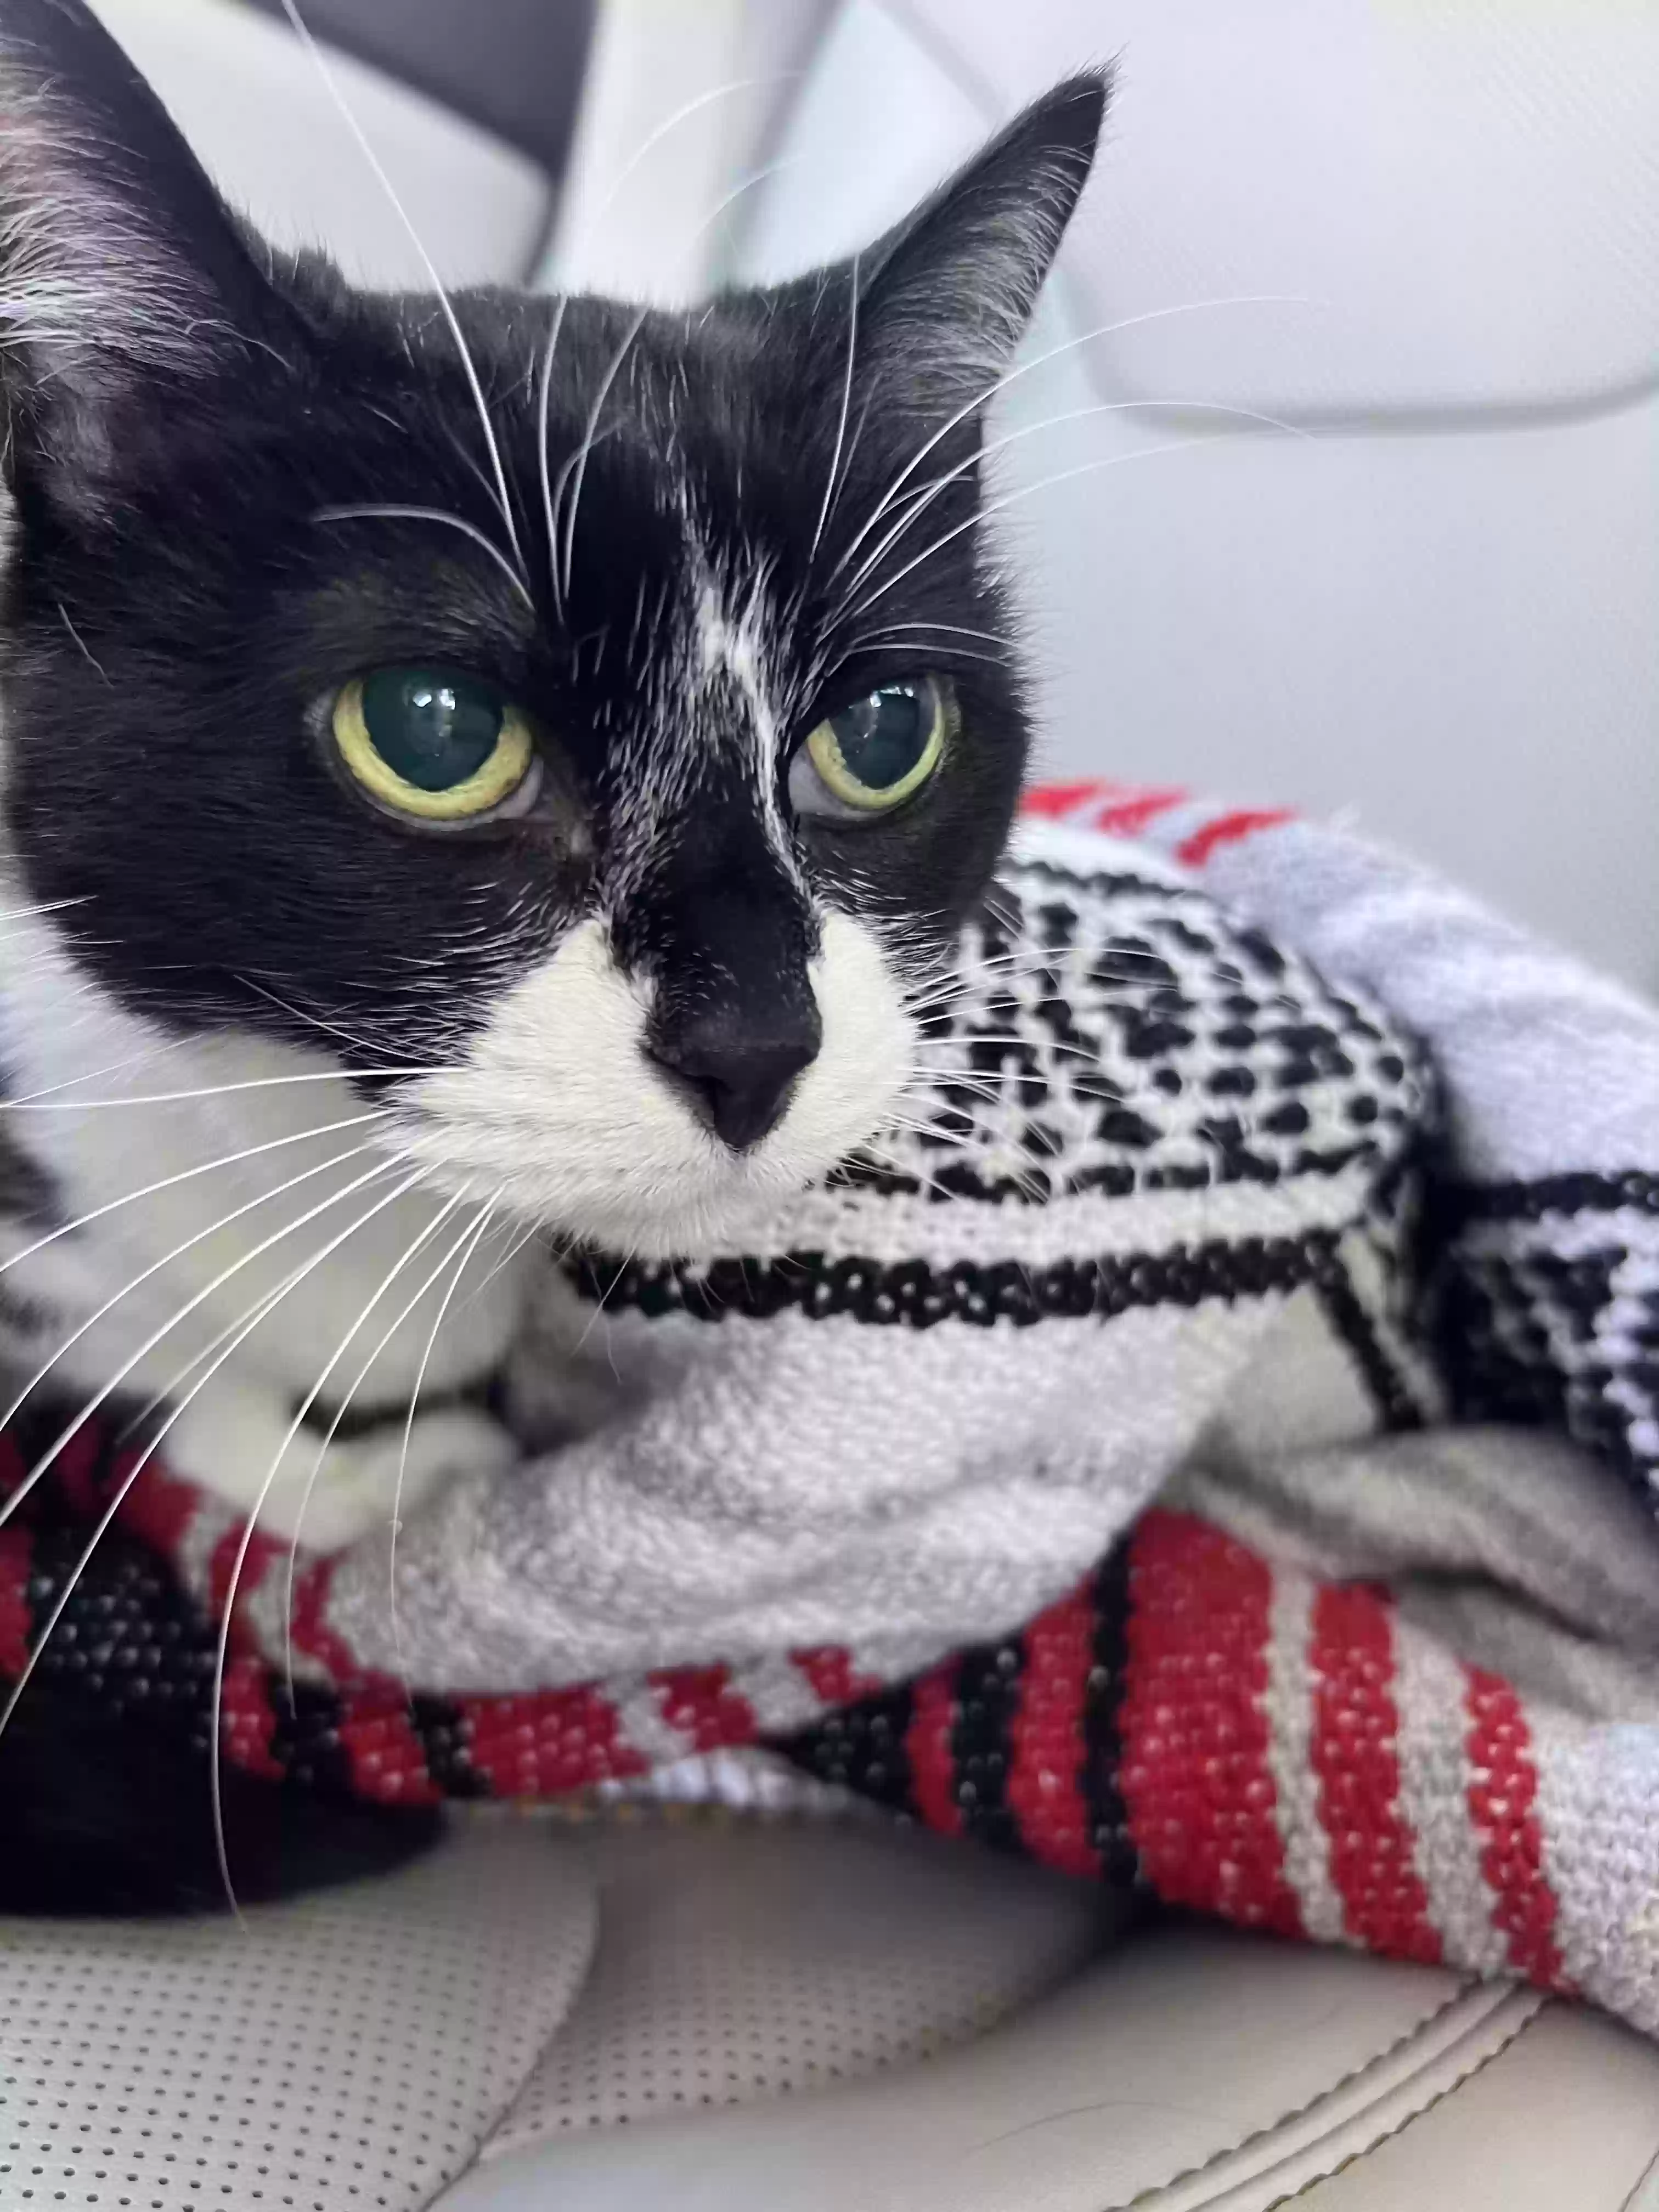 adoptable Cat in Bonita,CA named Minnie